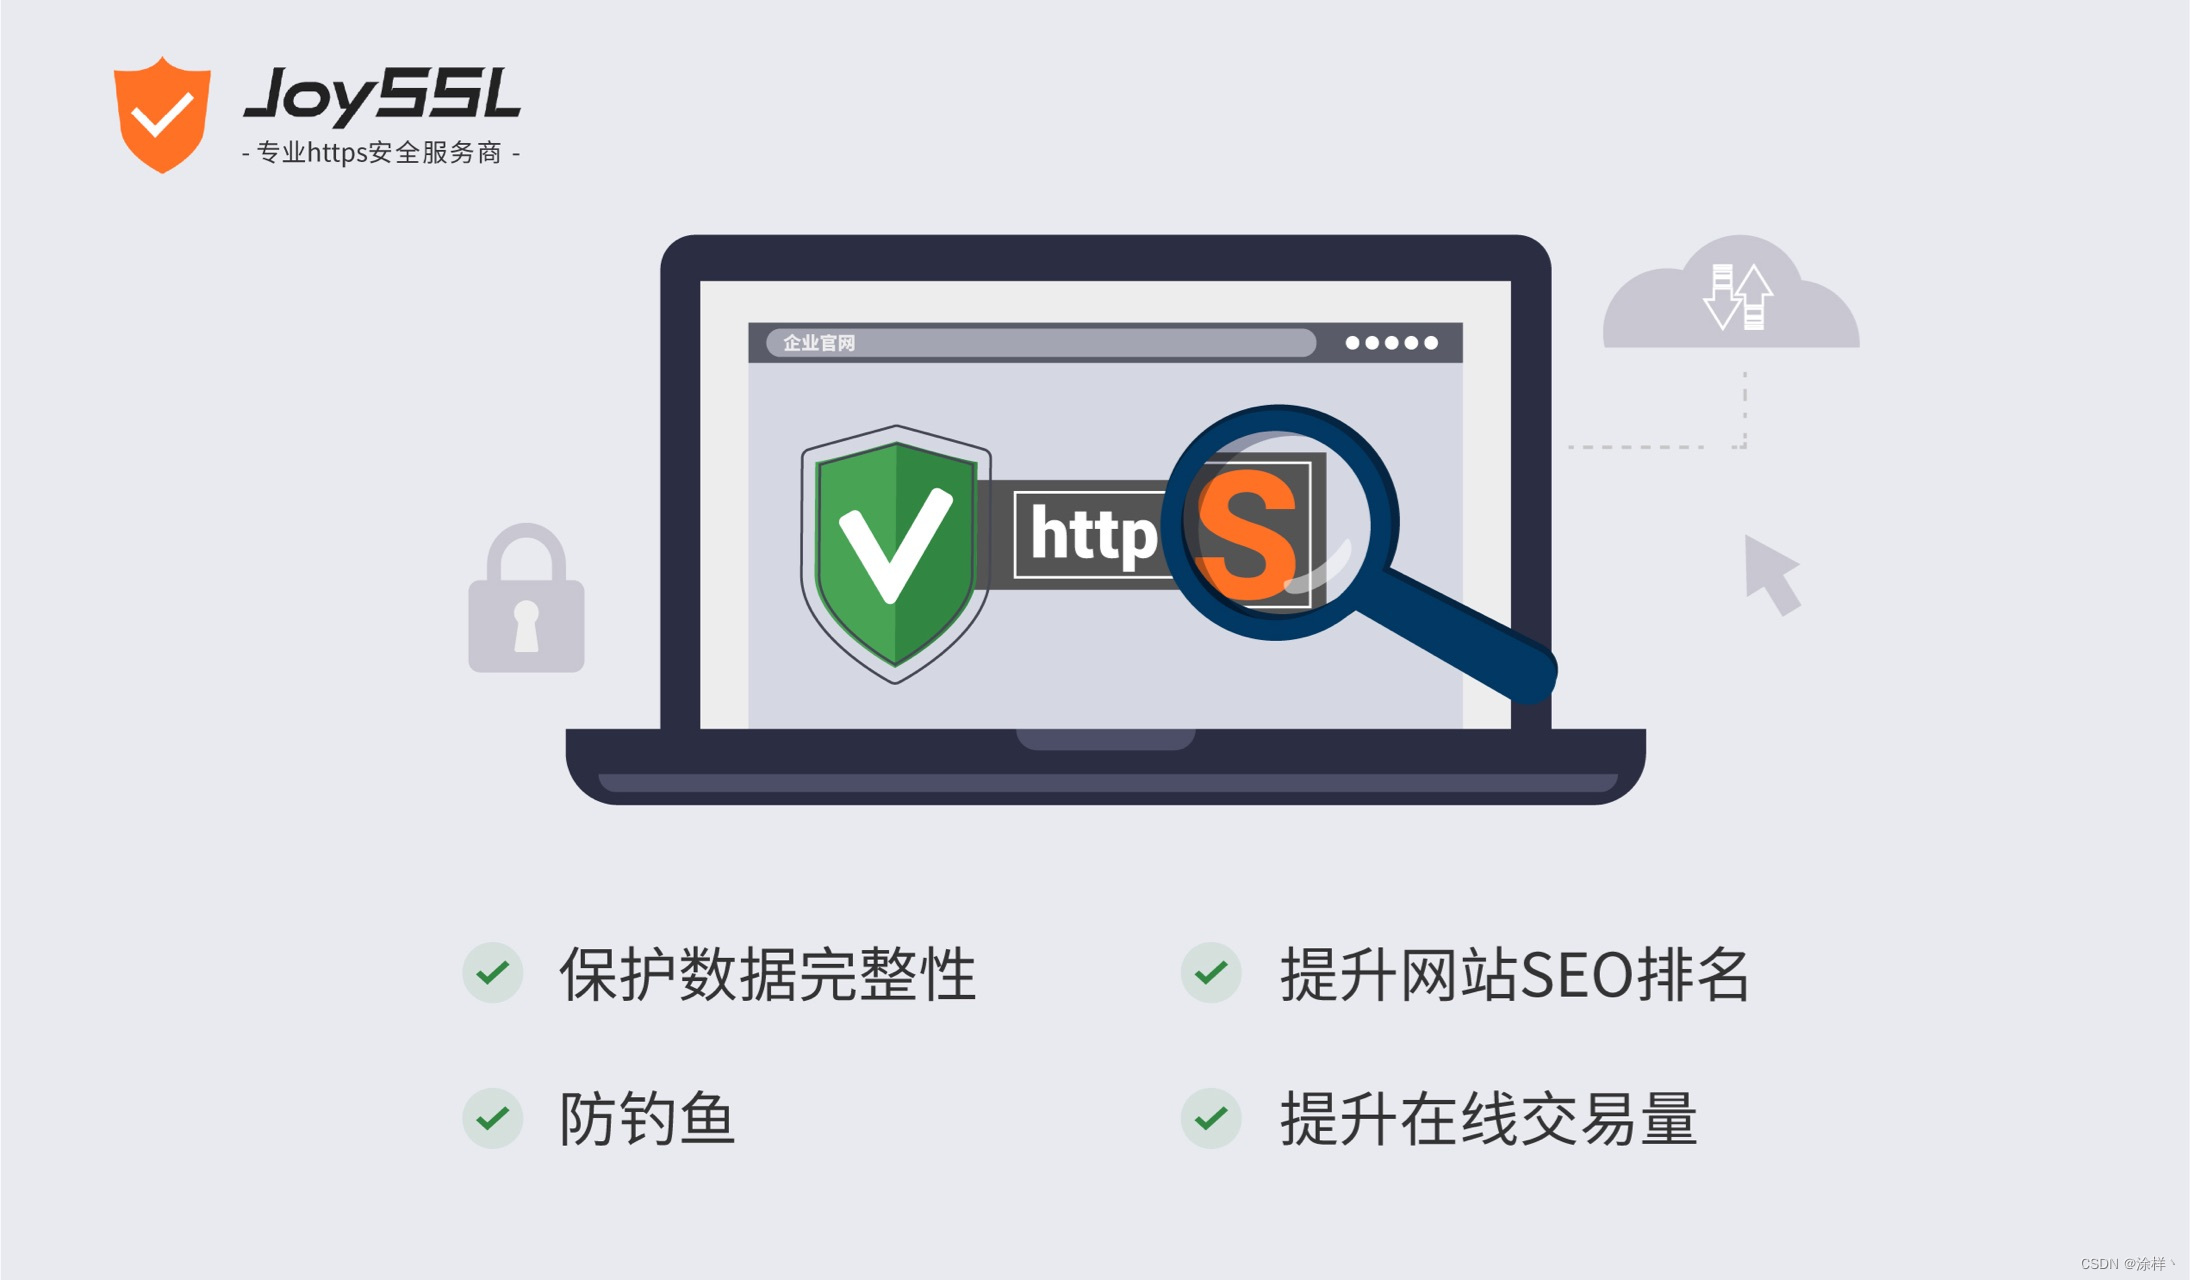 免费SSL证书：JoySSL让您的网站更安全